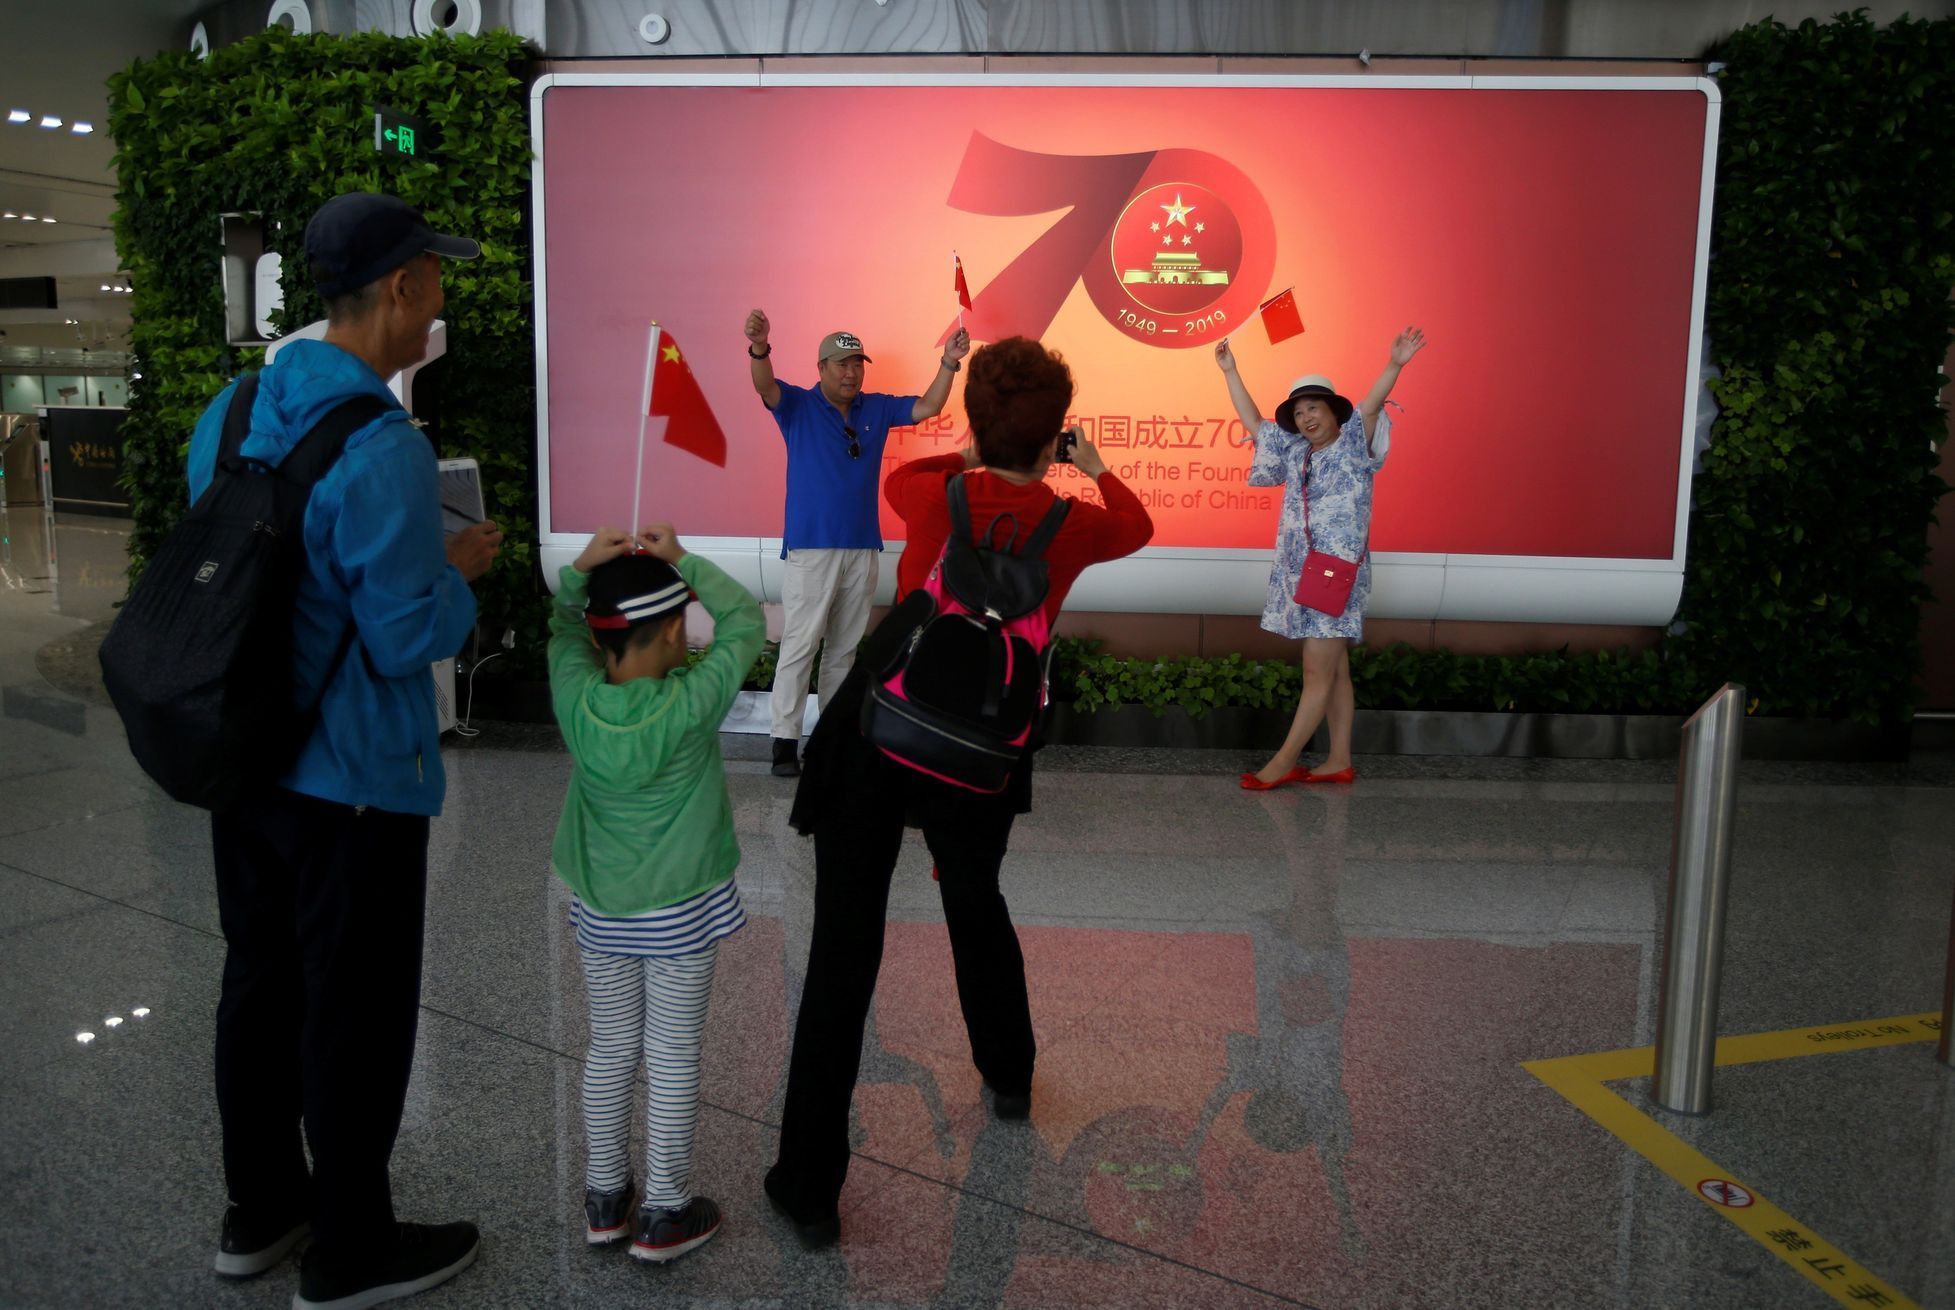 Čínské mezinárodní letiště Ta-sing-otevření